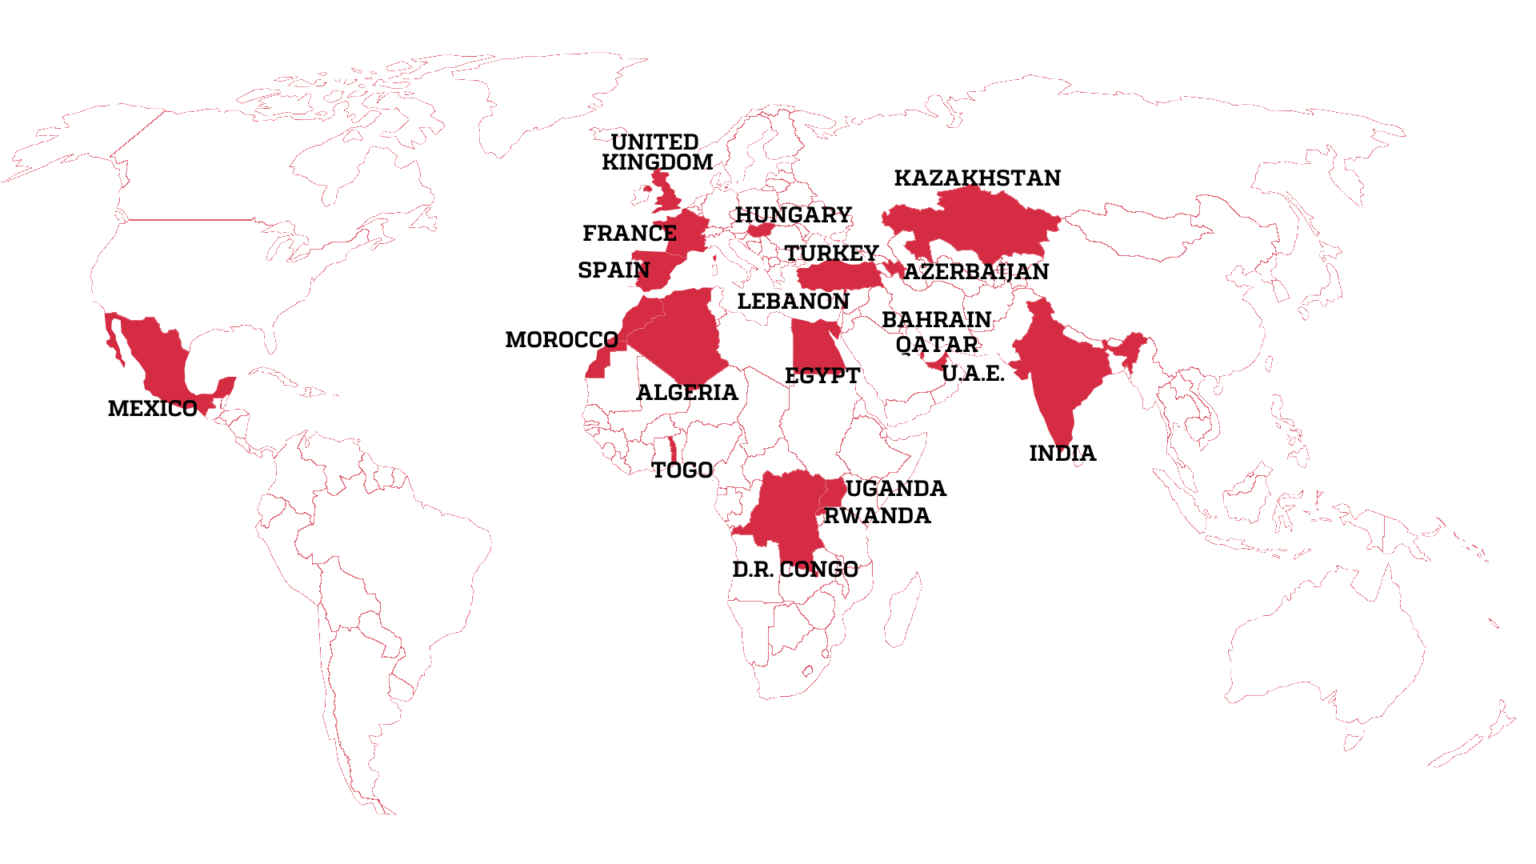 Страны, в которых, согласно списку, через программы NGO ведётся слежка за журналистами. Источник: forbiddenstories.org